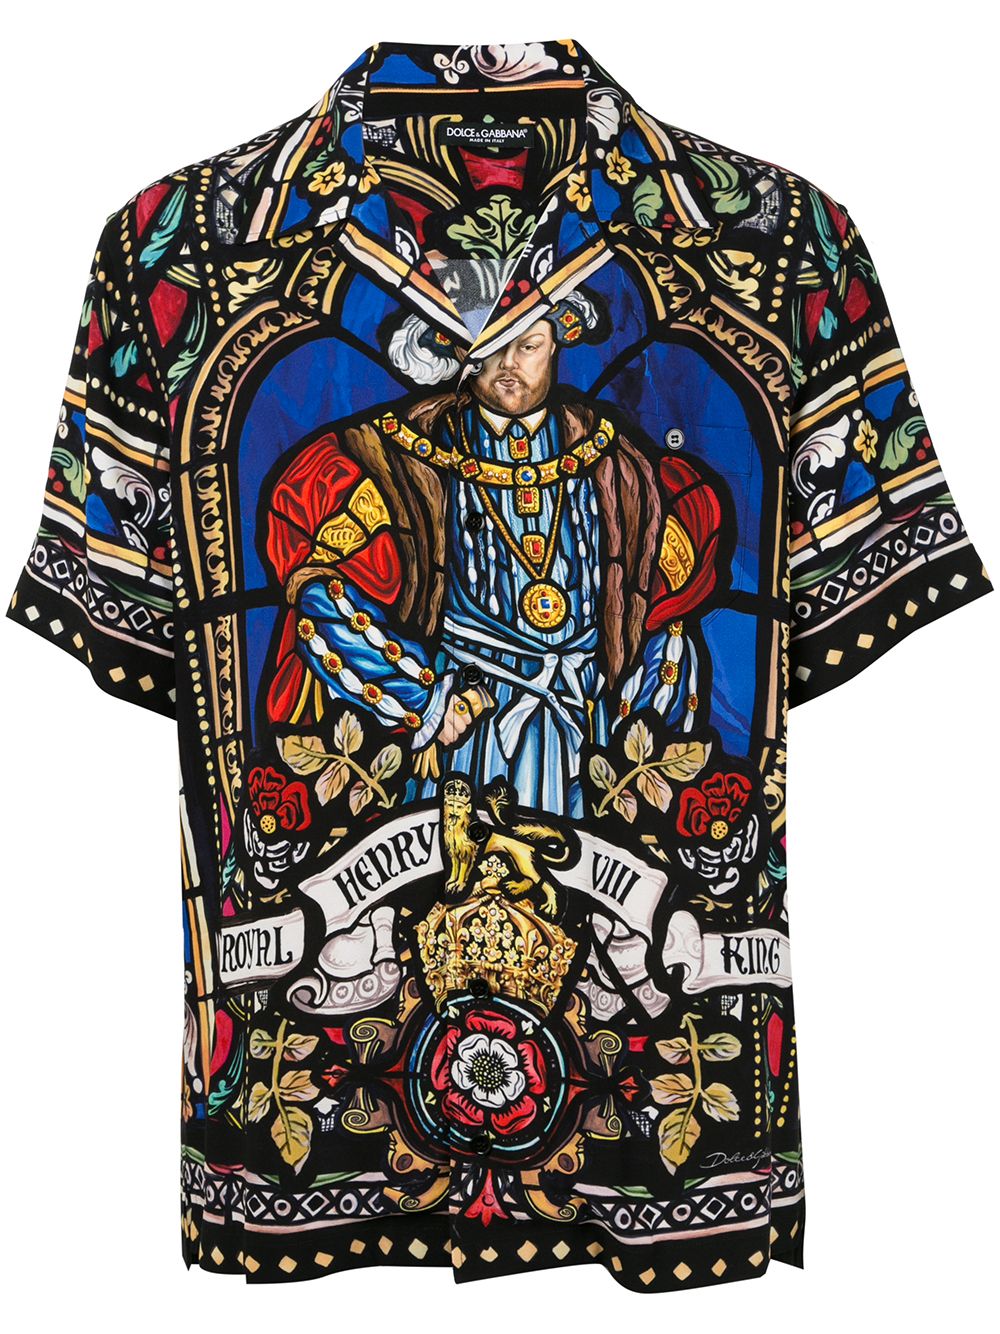 Рубашка дольче габбана. Рубашка Dolce Gabbana. Рубашка Дольче Габбана с крестом. Рубашки от Дольче Габбана. Рубашка Дольче Габбана мужская.